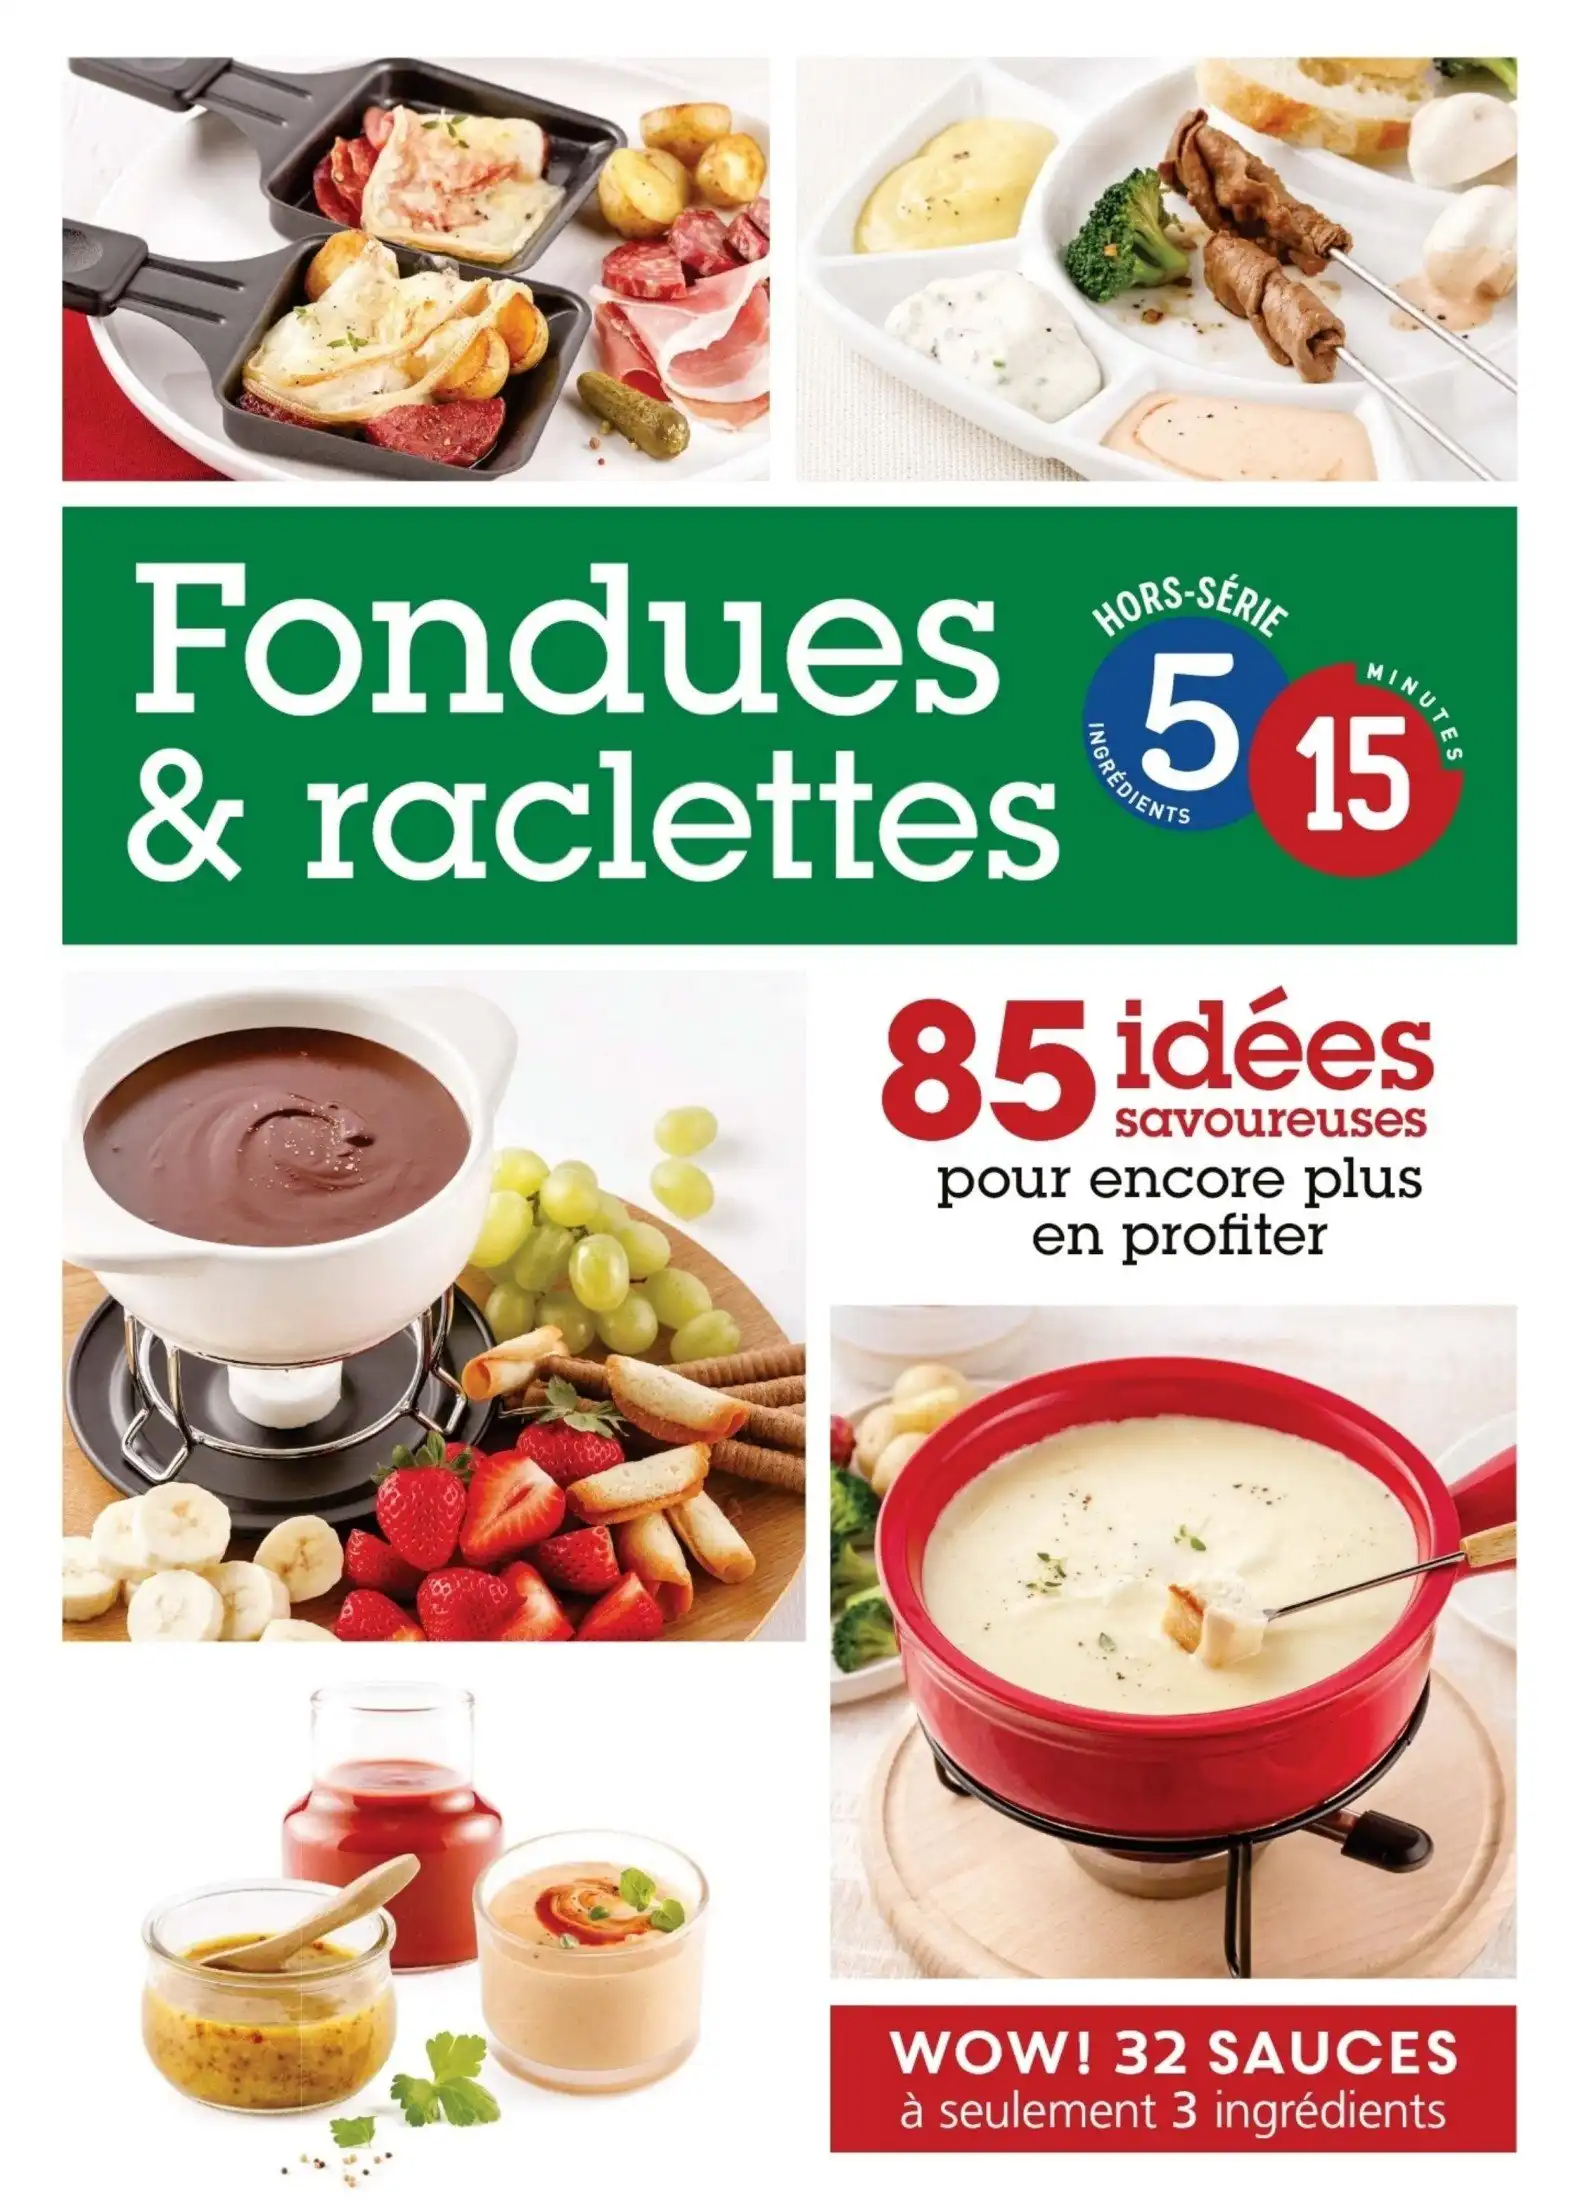 5 ingrédients-15 minutes - HS Fondues et raclettes - Janvier 2020